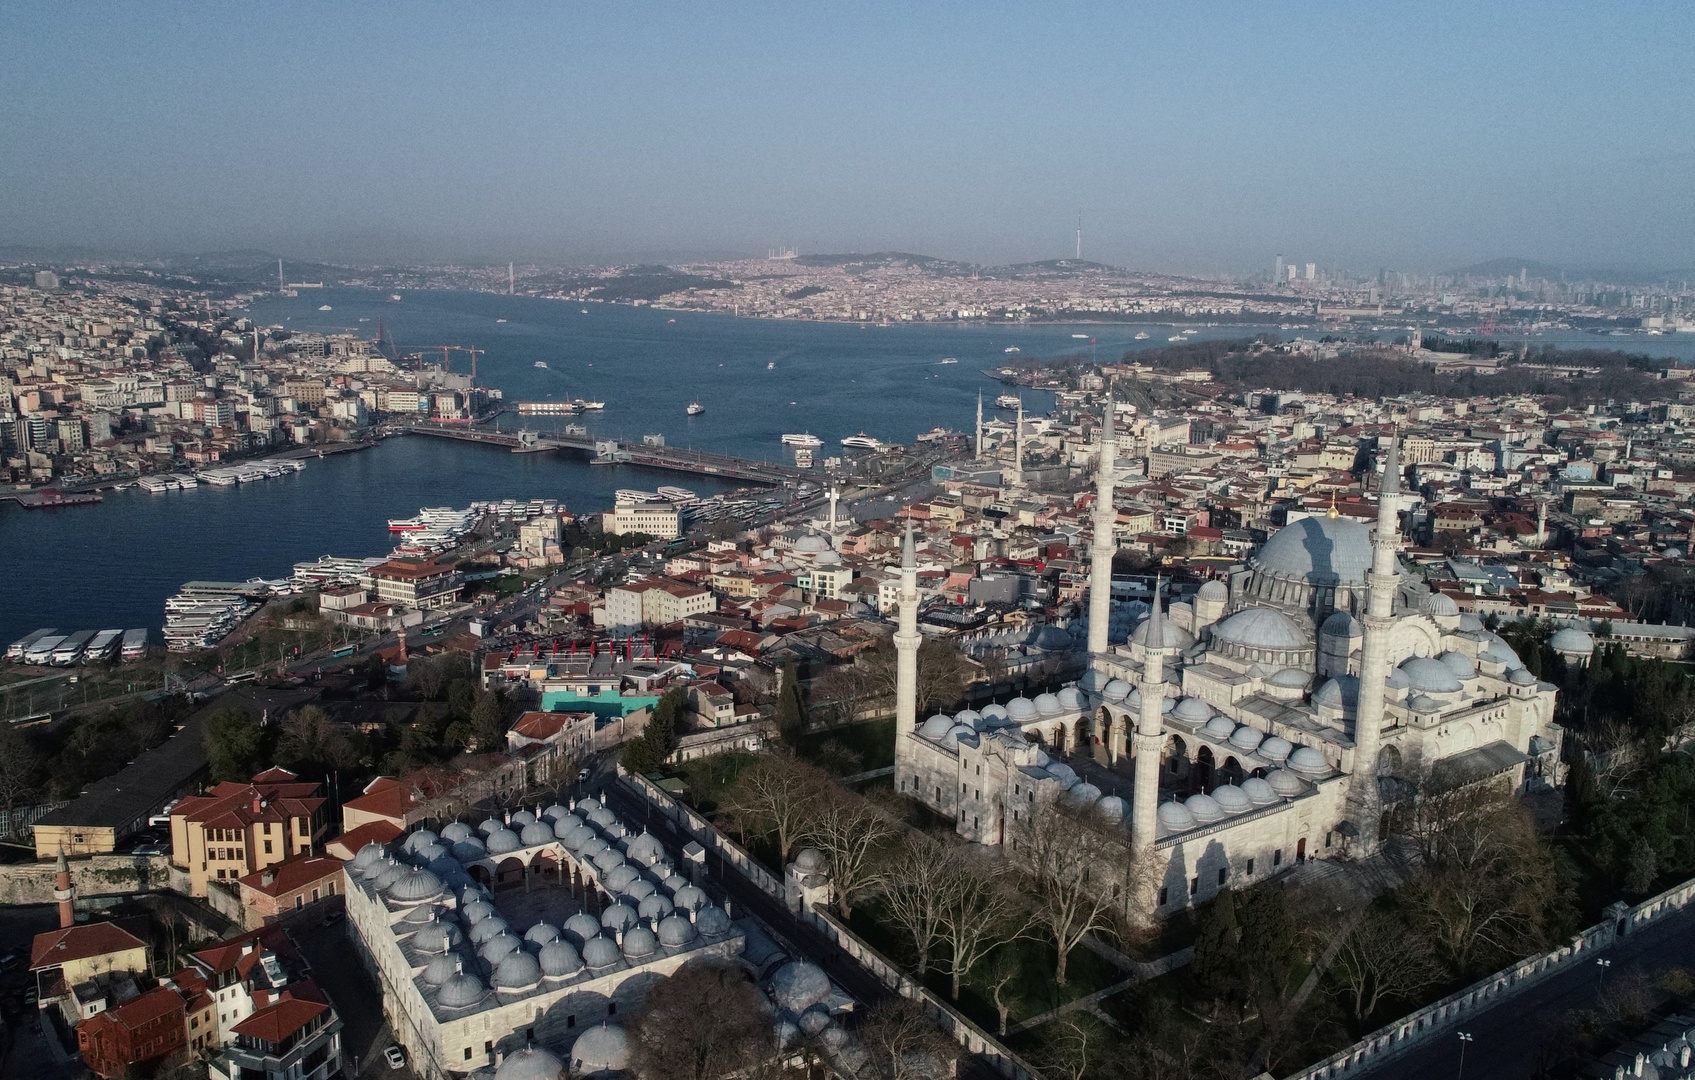 ارتفاع قياسي لوفيات كورونا في تركيا بـ46 حالة جديدة